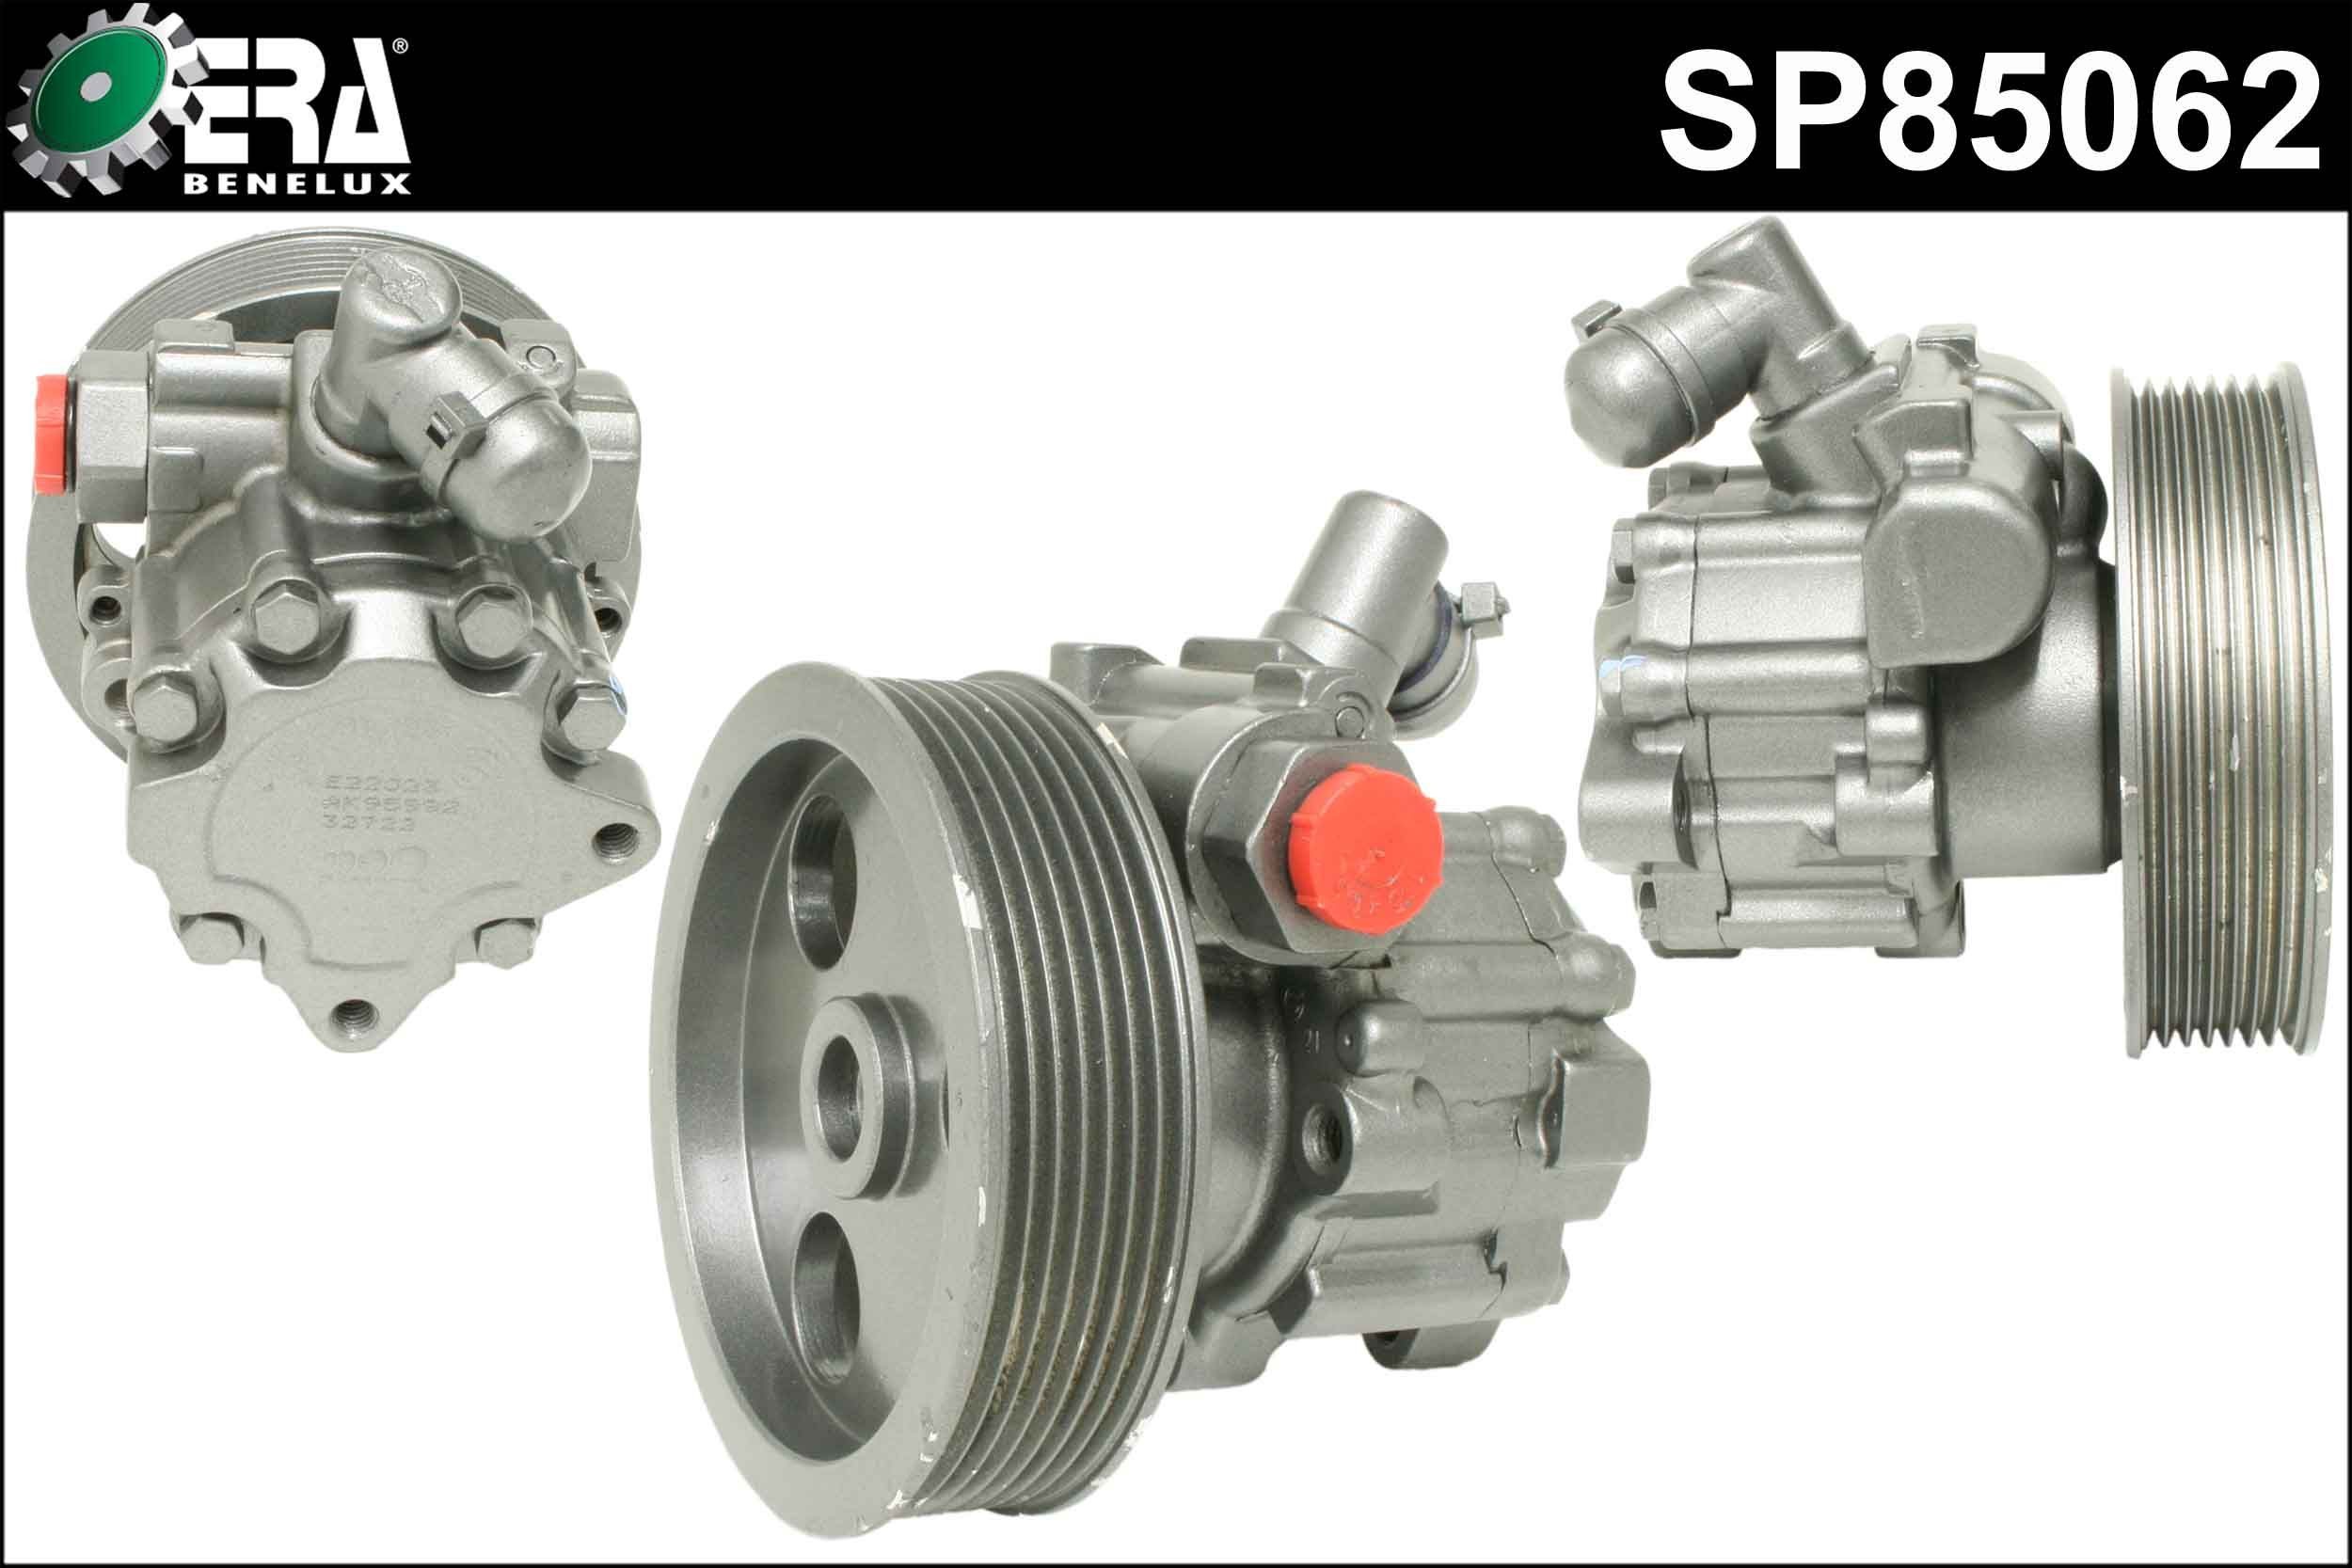 ERA Benelux SP85062 Power steering pump 0054660101